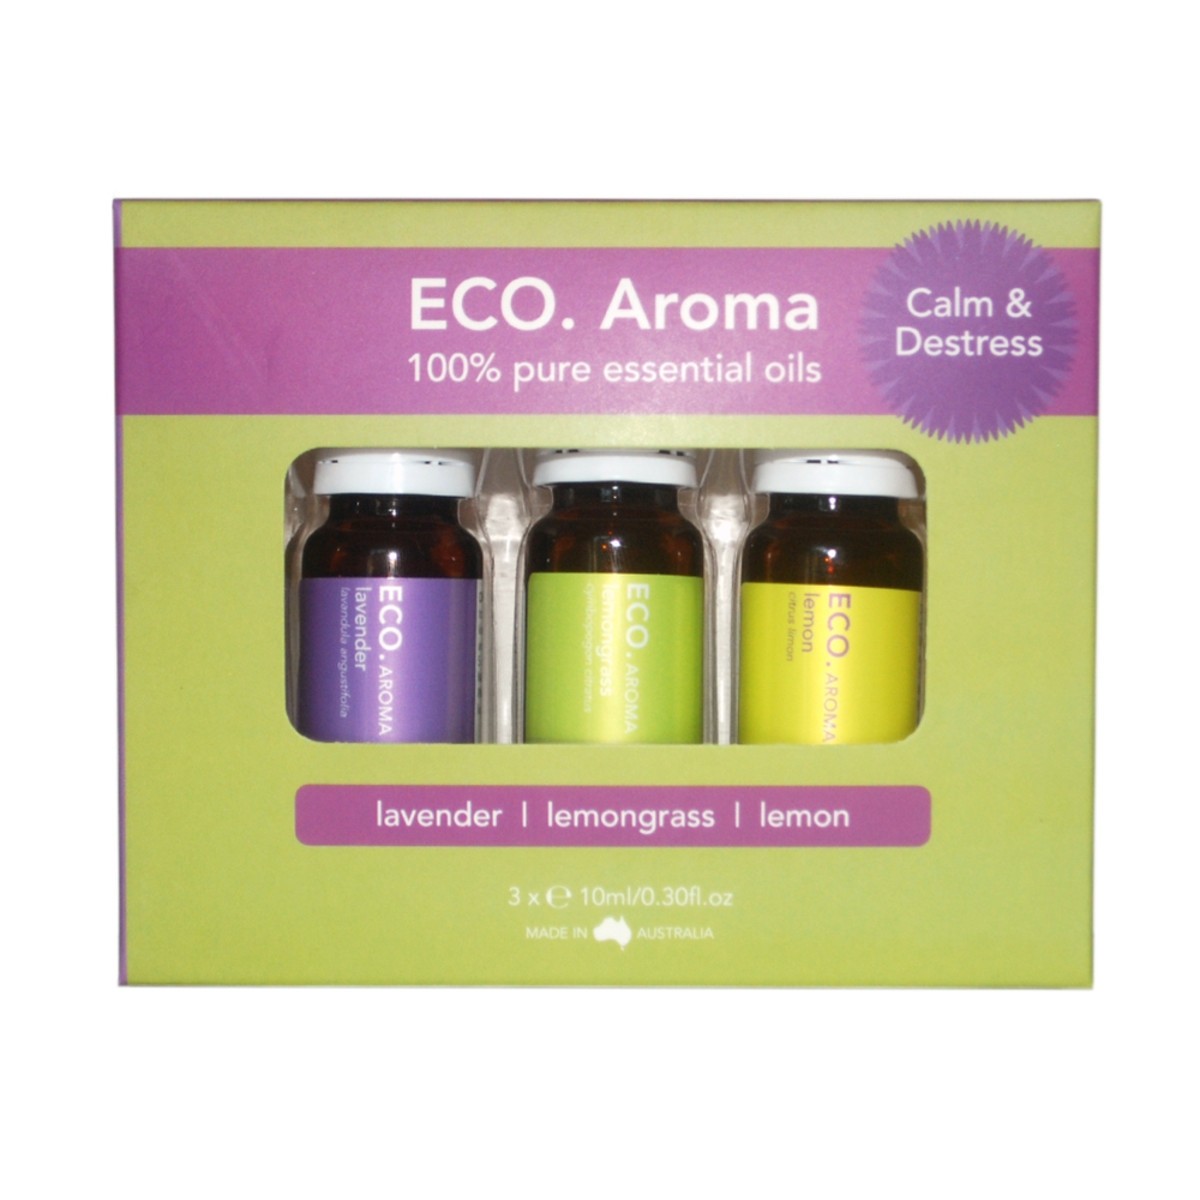 ECO Aroma Calm and Destress Trio Essential Oil Blend